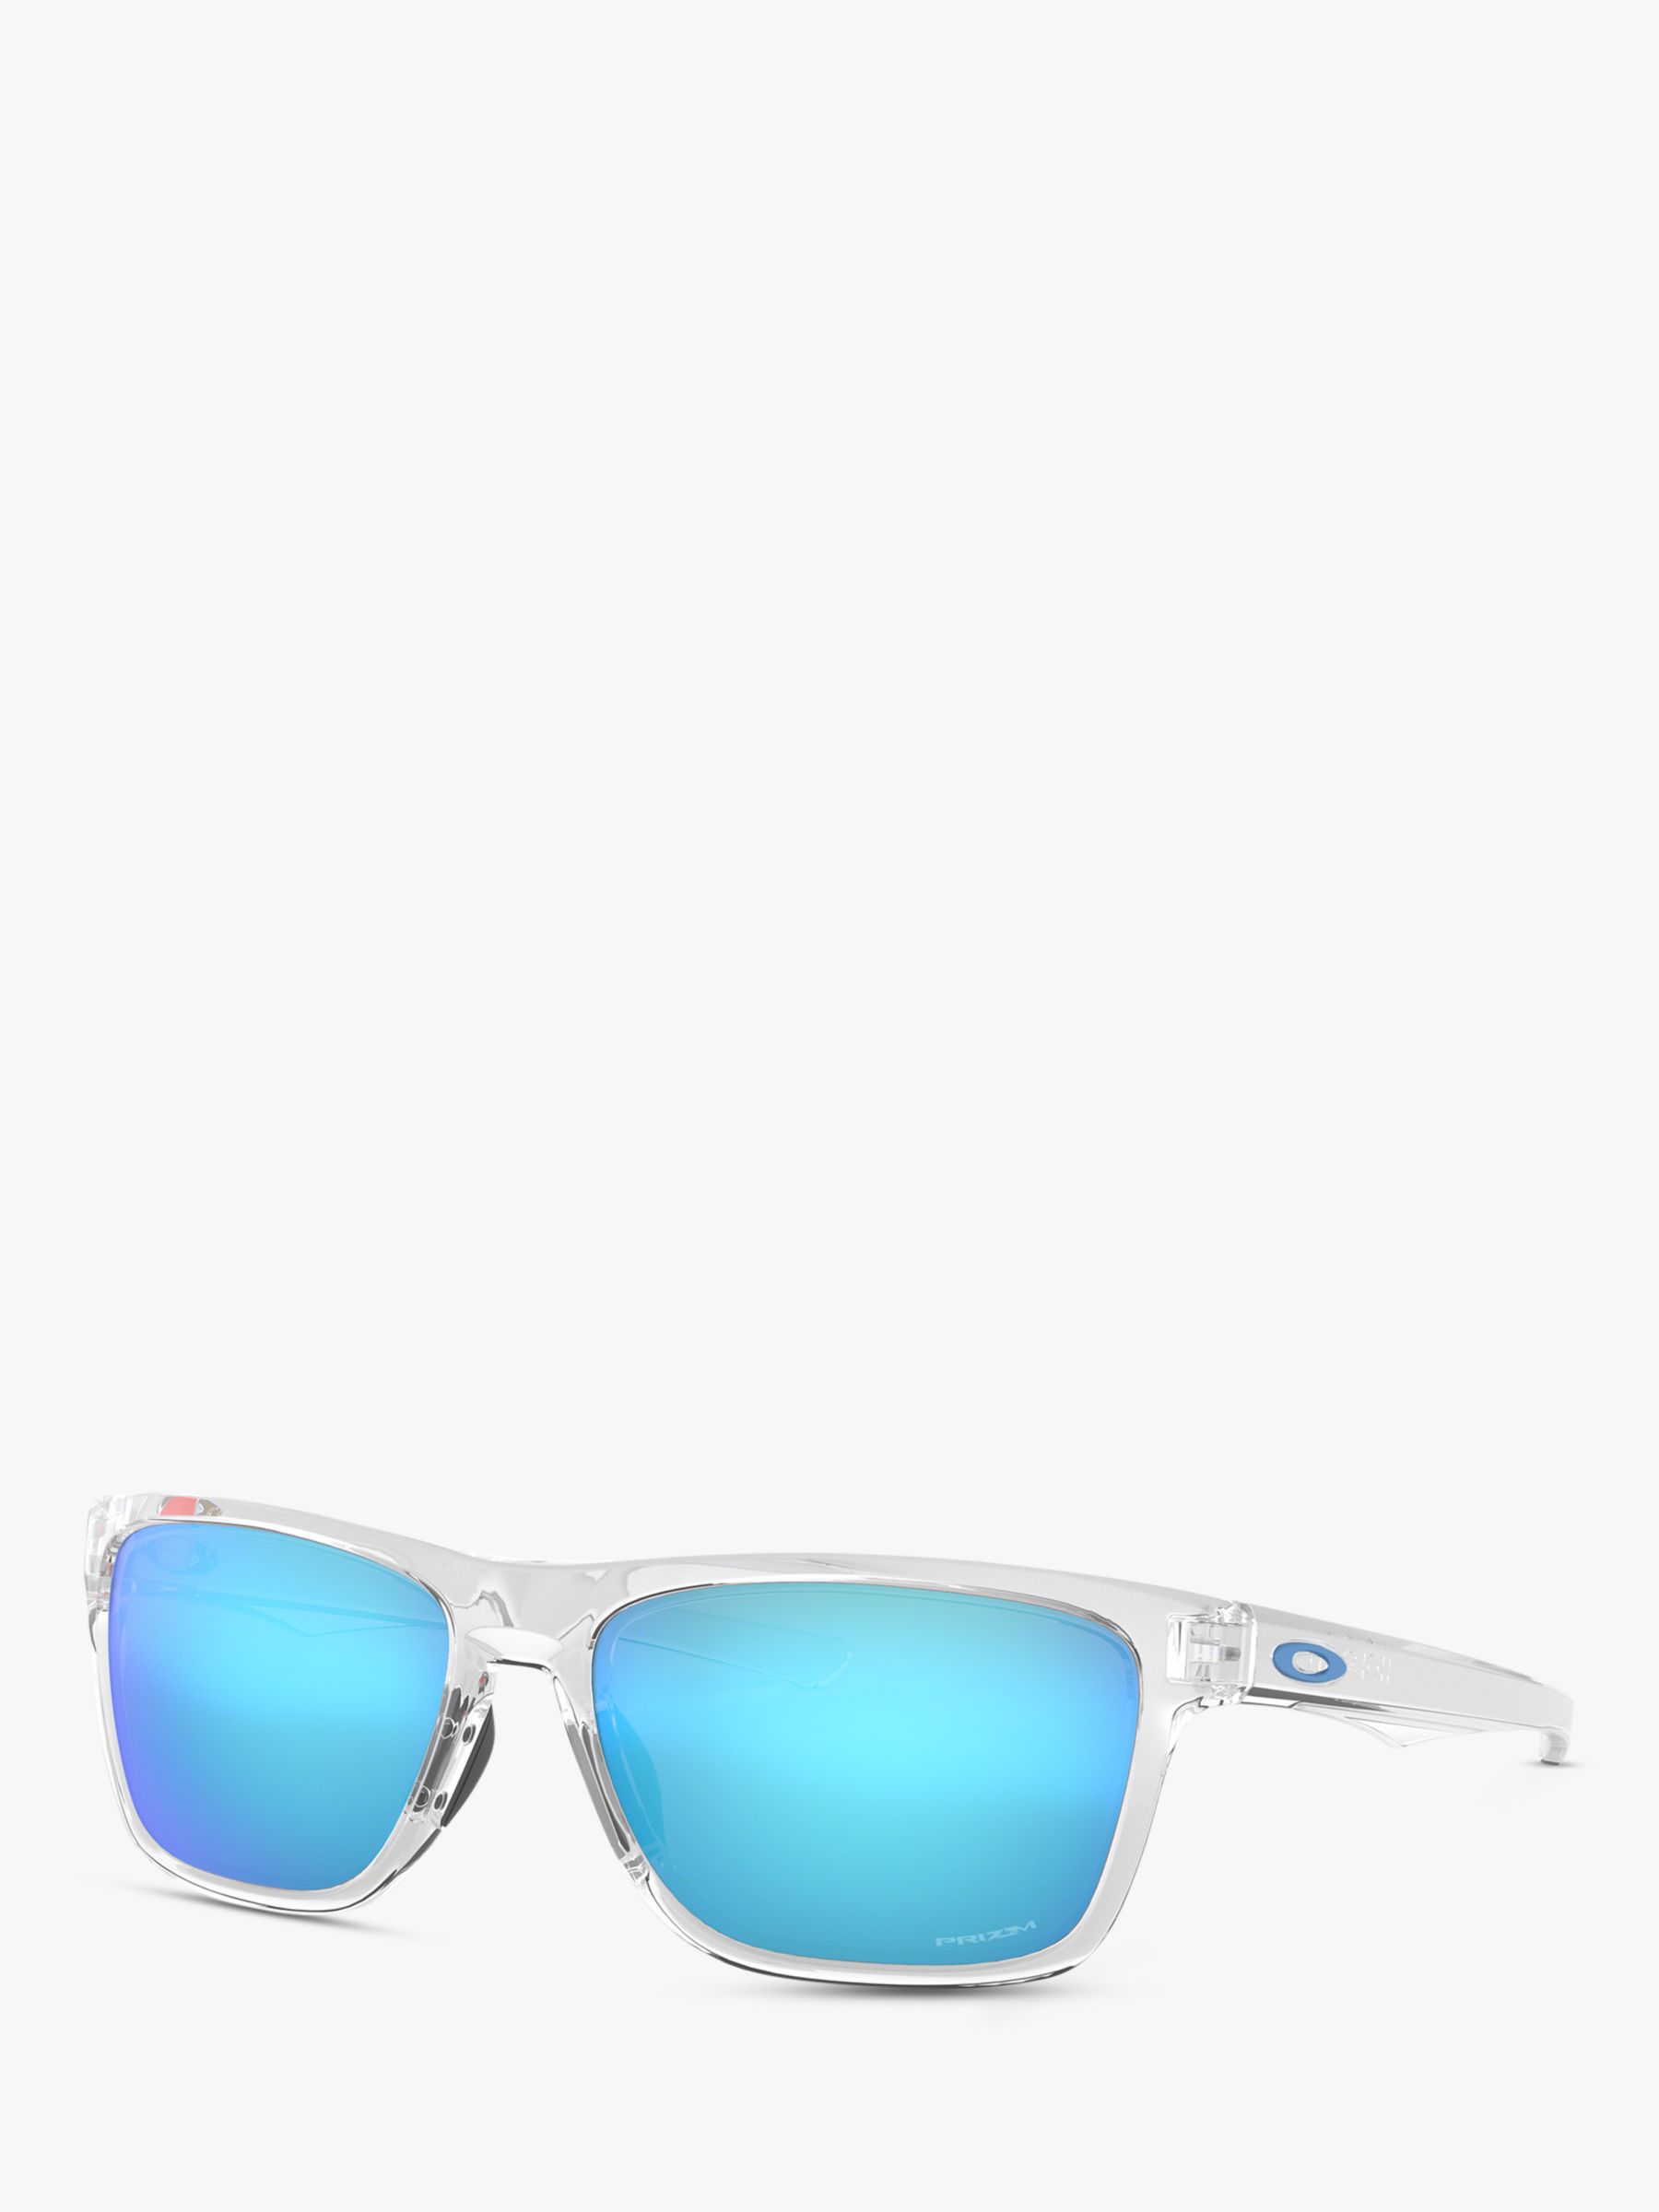 Oakley OO9334 Men's Holston Prizm Square Sunglasses, Clear/Mirror Blue